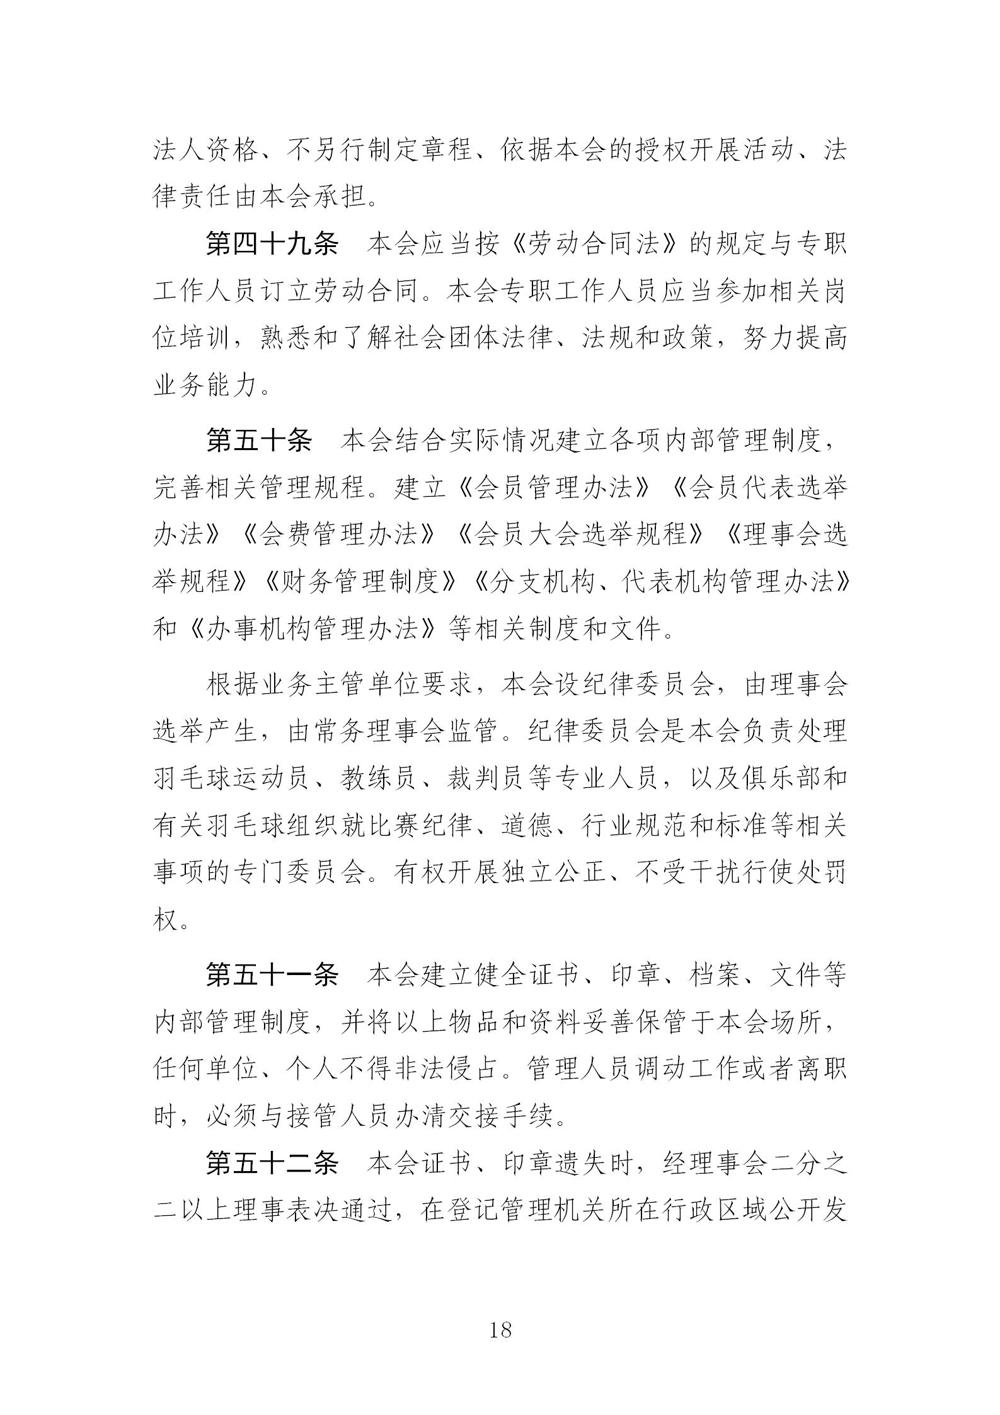 3-广东省羽毛球协会新章程20221107-根据民政厅修改意见修改_18